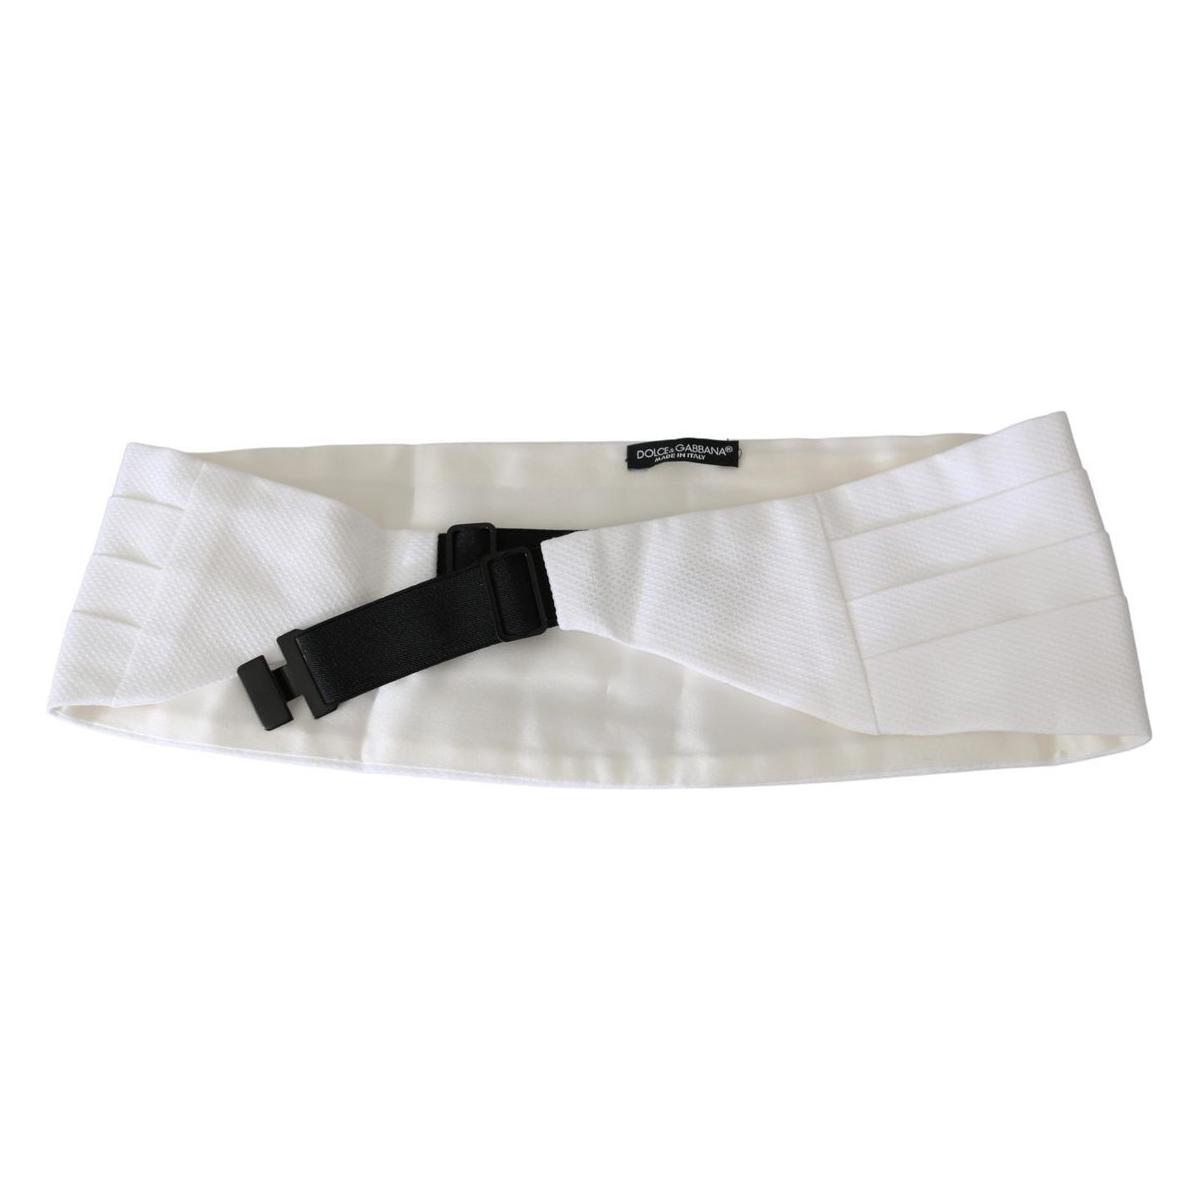 Dolce & Gabbana Elegant Silk White Cummerbund white-men-waist-belt-cotton-cummerbund IMG_9638-scaled-0c2b4877-dbf.jpg